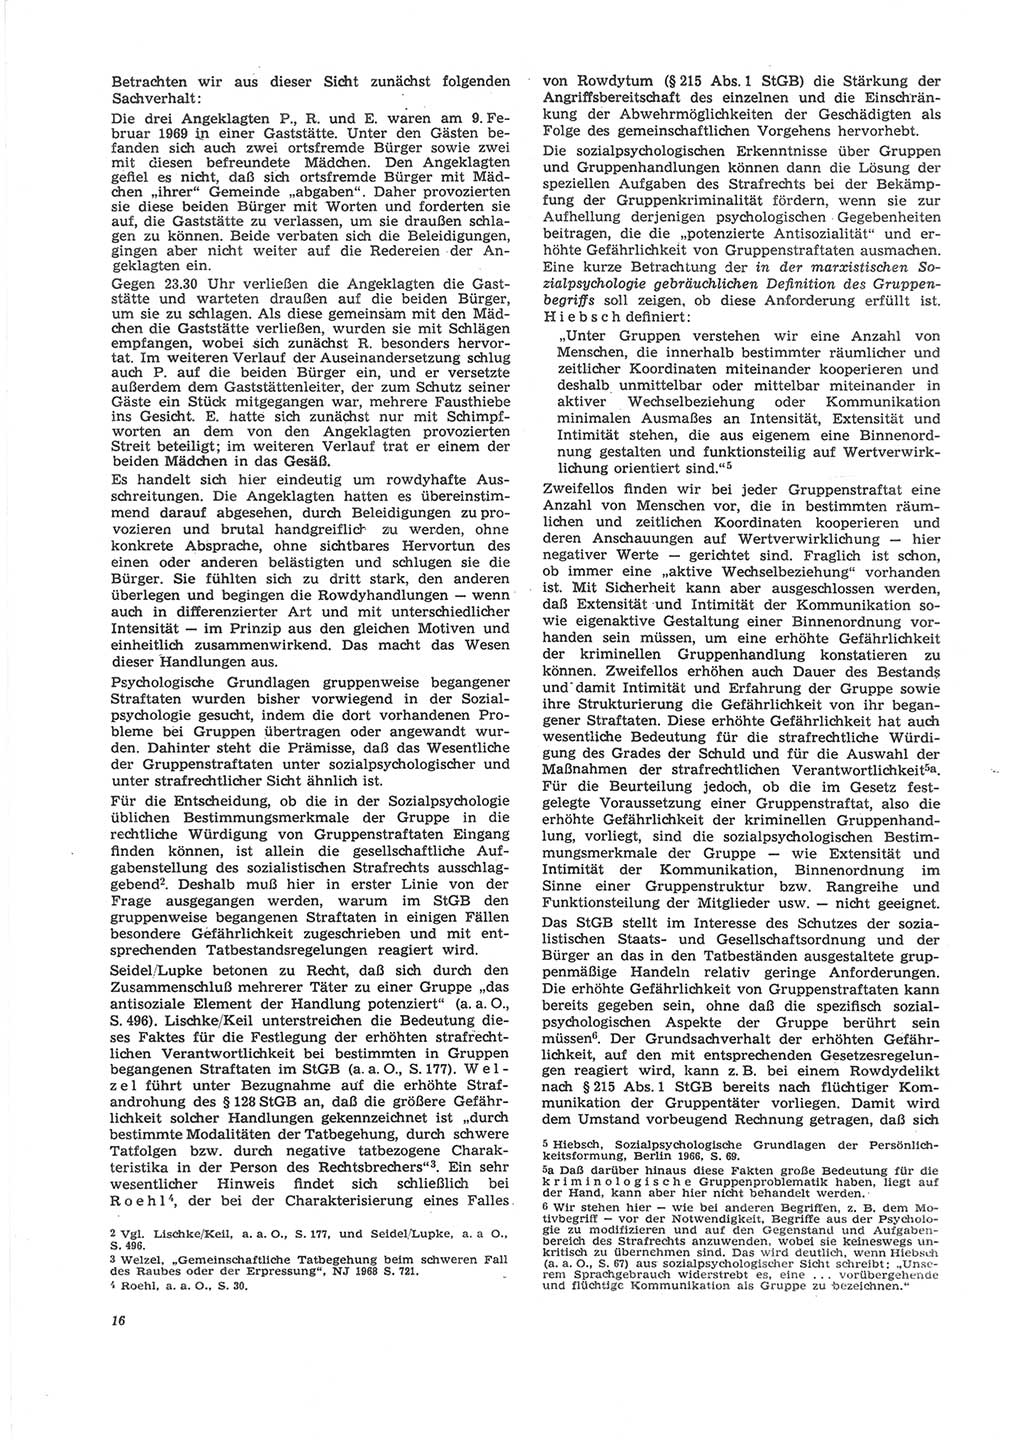 Neue Justiz (NJ), Zeitschrift für Recht und Rechtswissenschaft [Deutsche Demokratische Republik (DDR)], 24. Jahrgang 1970, Seite 16 (NJ DDR 1970, S. 16)